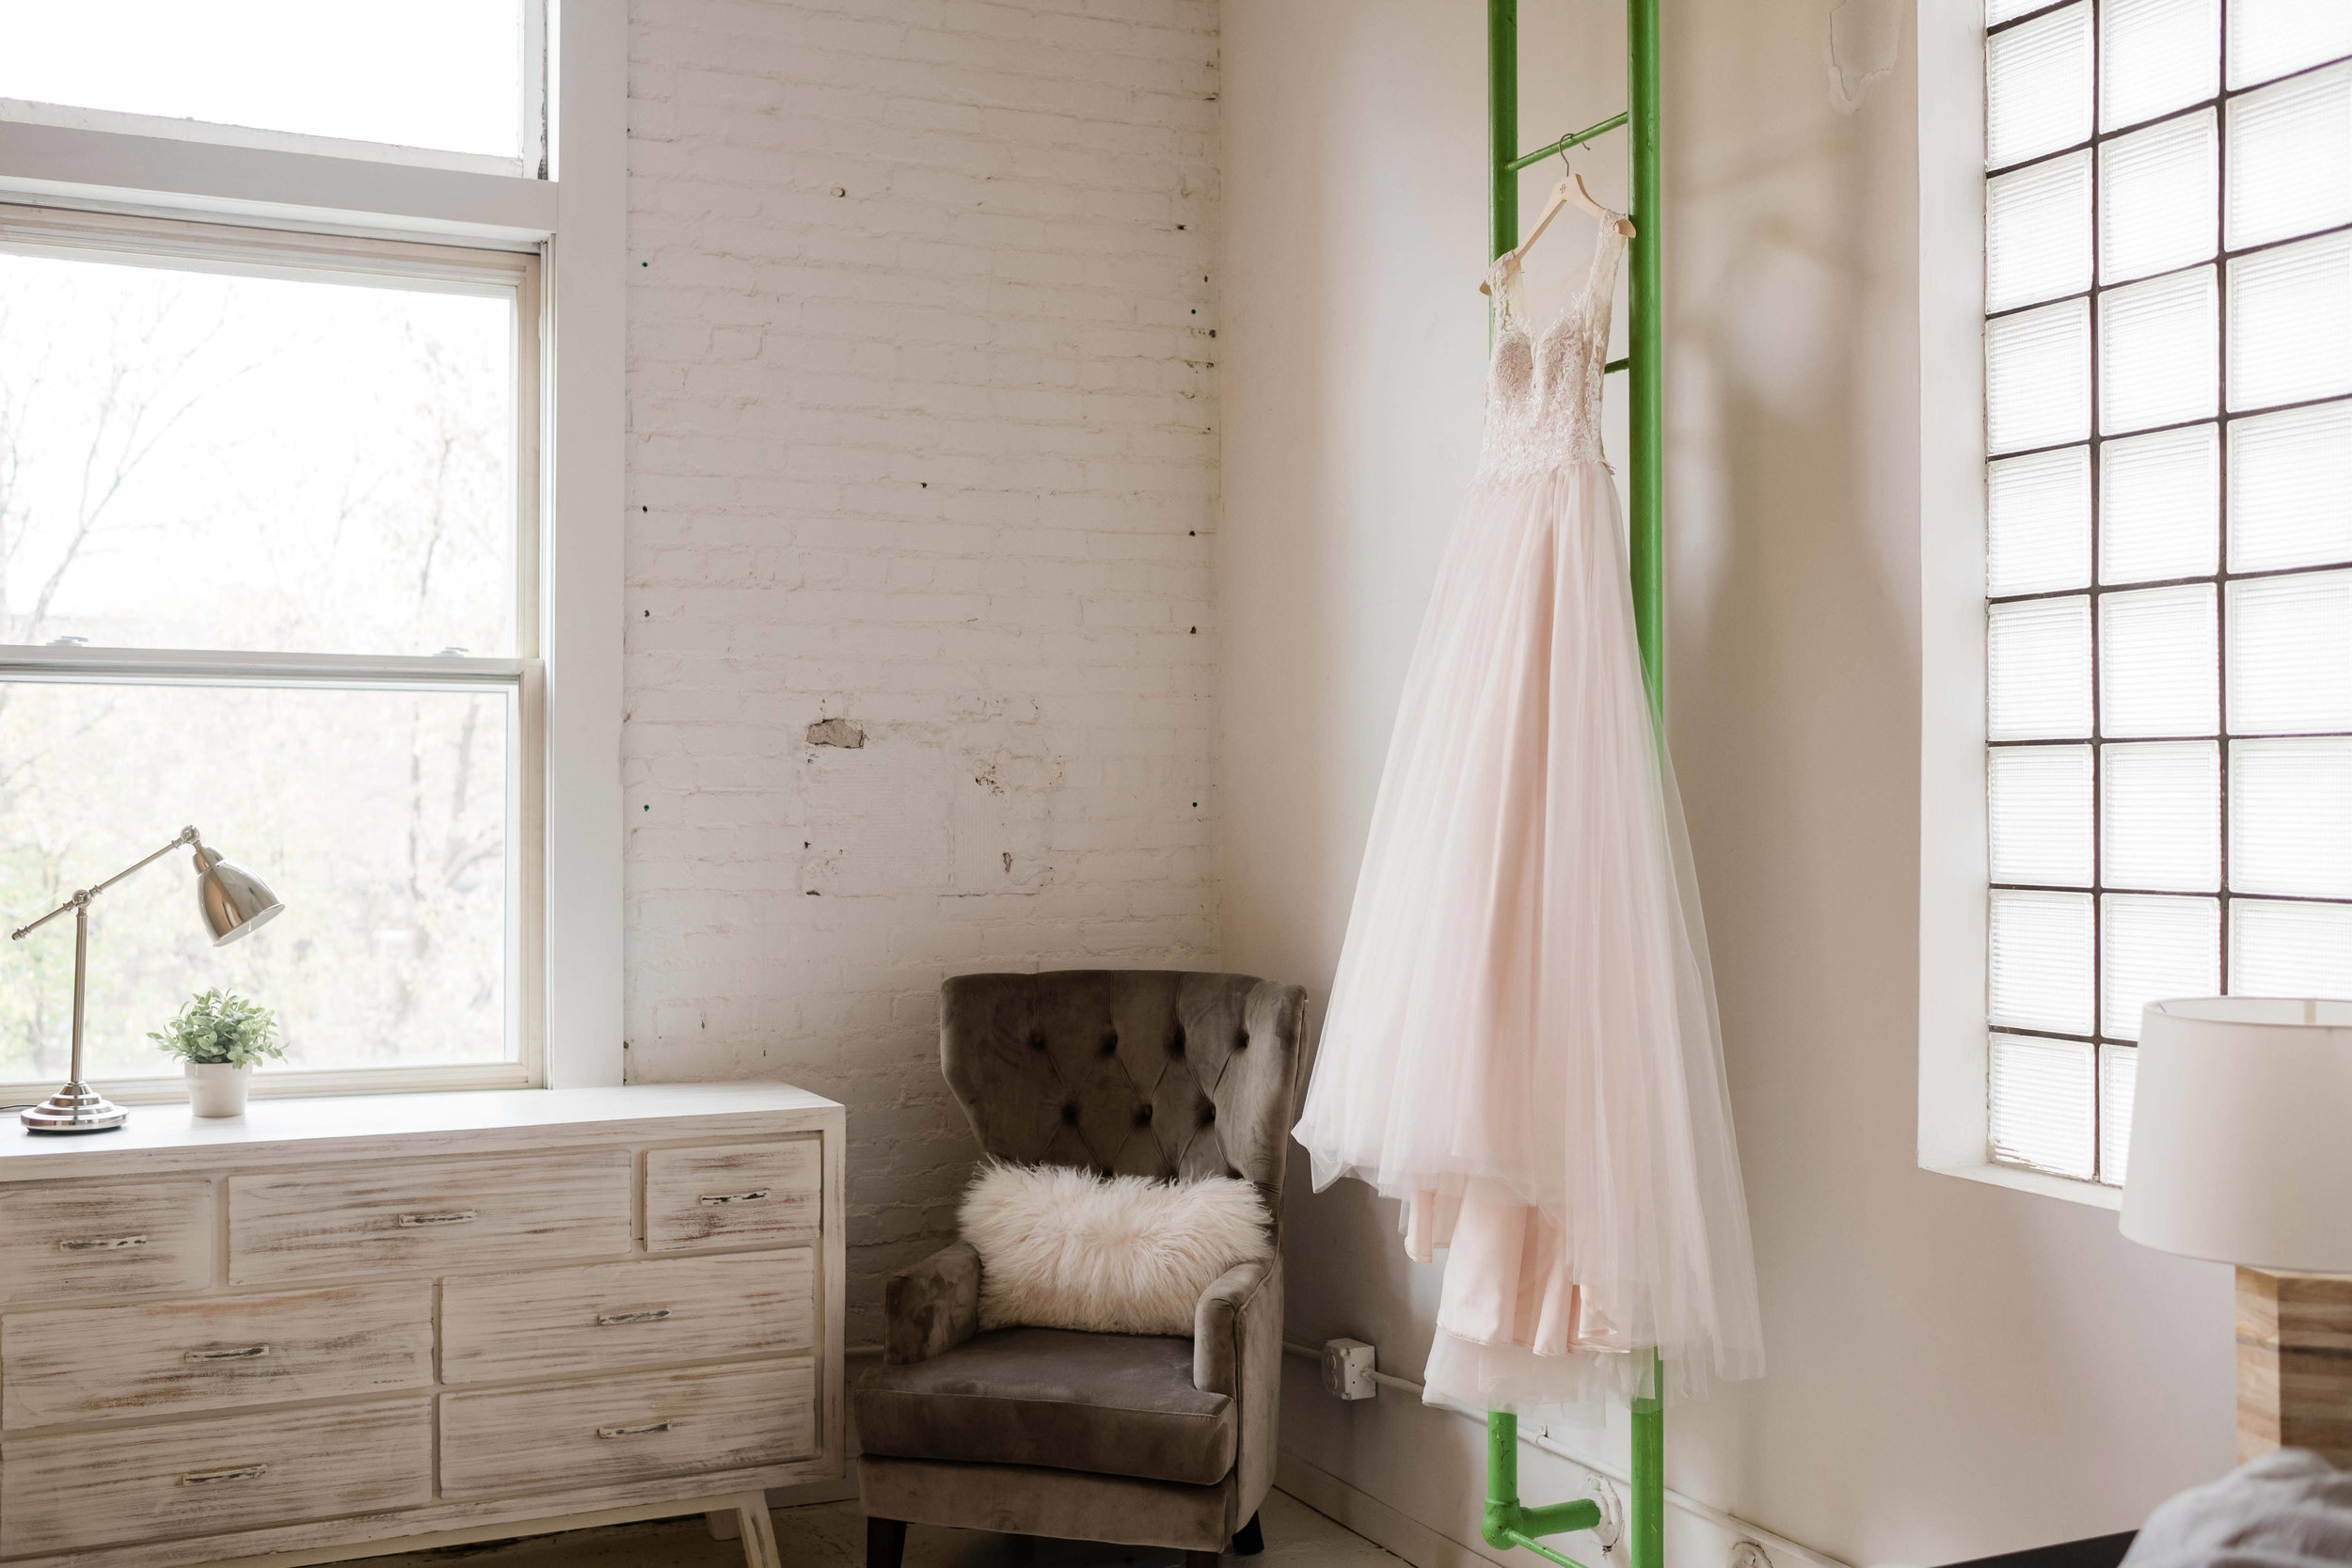 Blush pink wedding dress hanging on green ladder